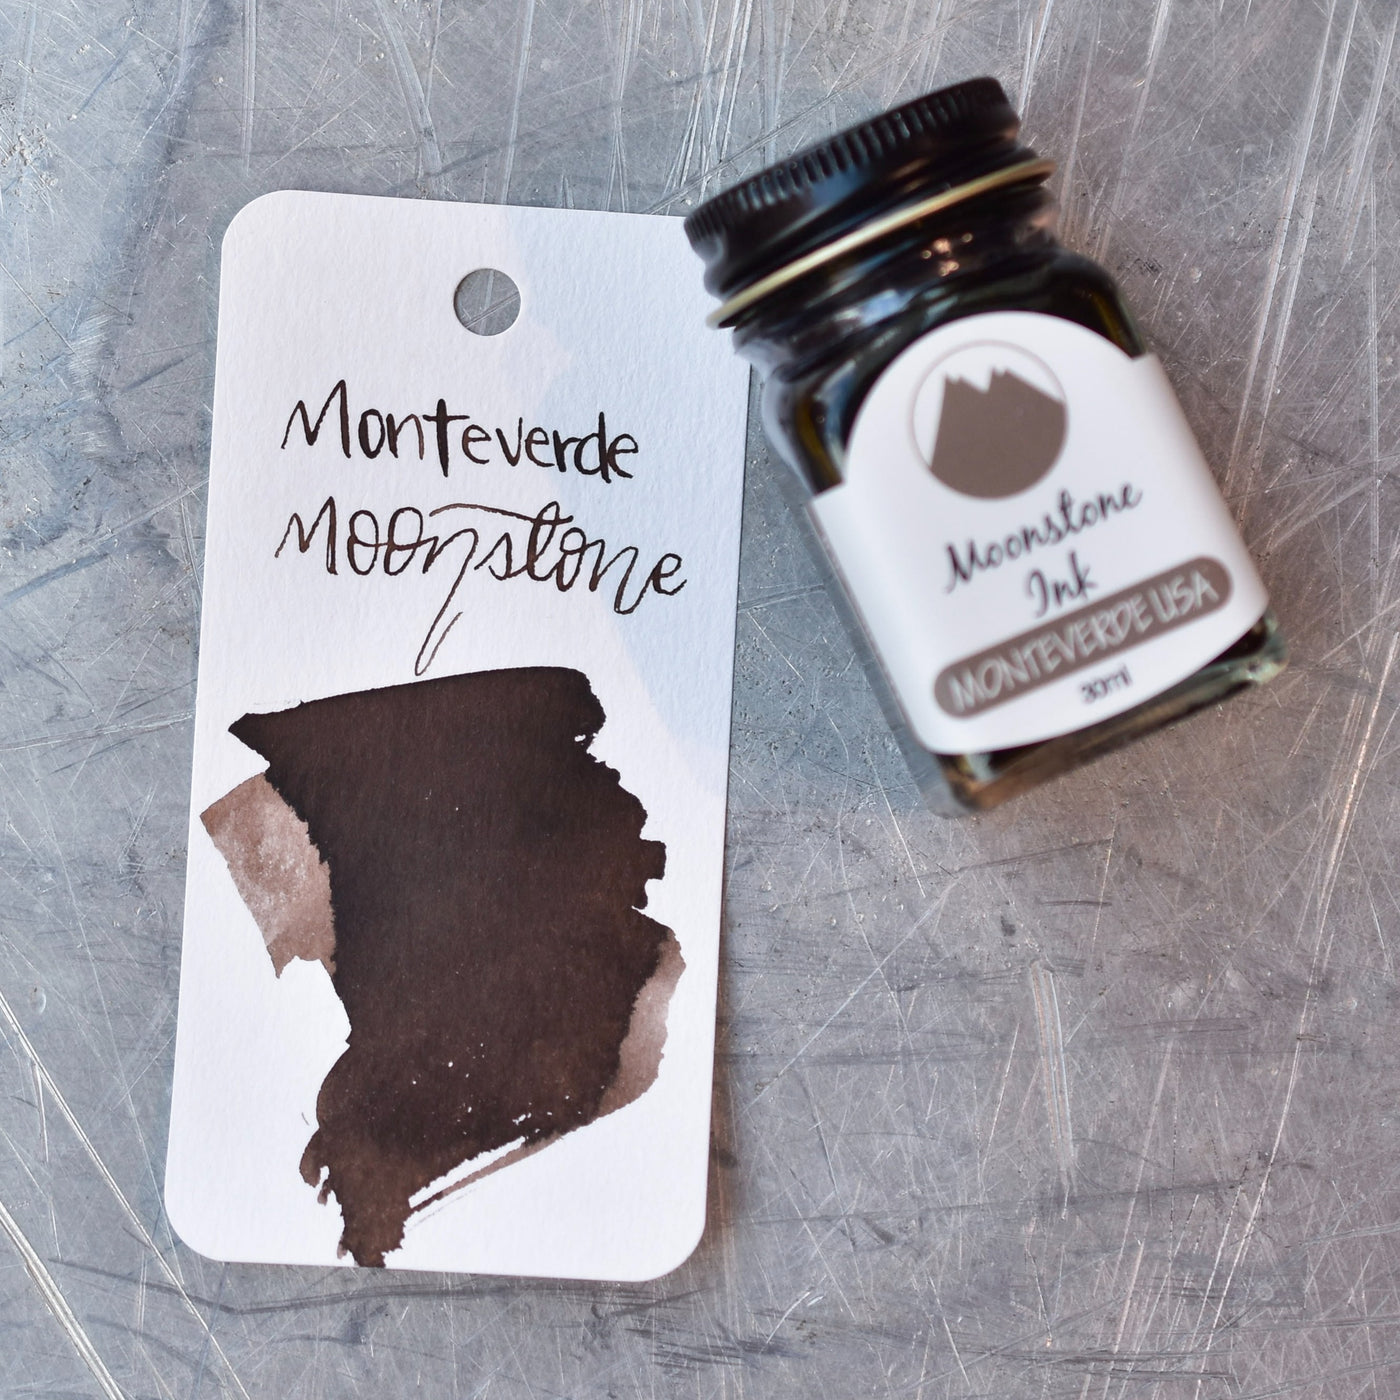 Monteverde Moonstone Ink Bottle